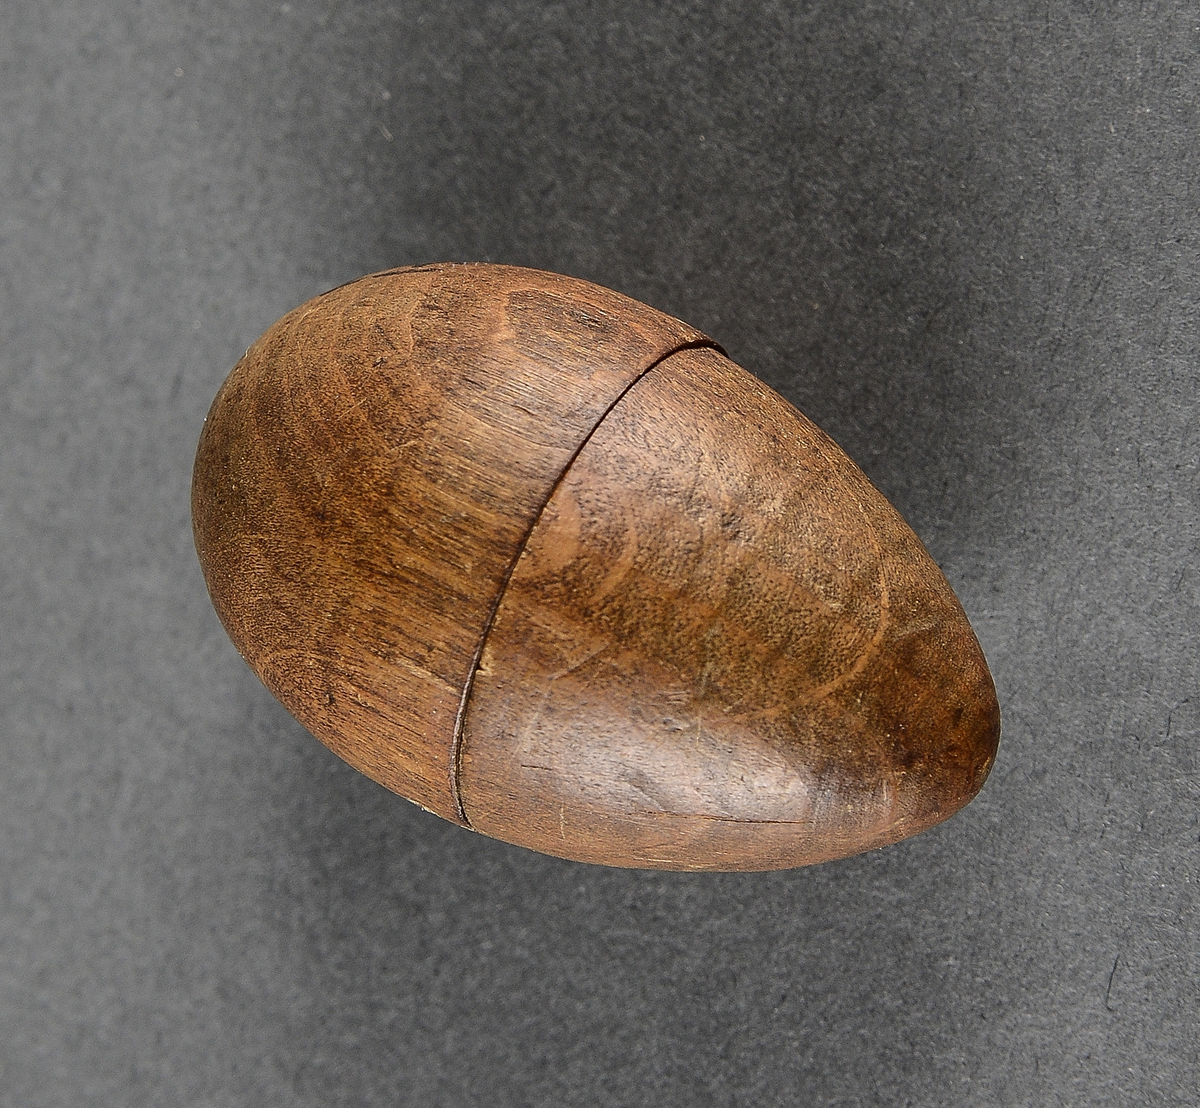 Liten eggformet beholder av metall innlagt i et trefuteral av samme fasong. Inne i  beholderen er det en svamp.